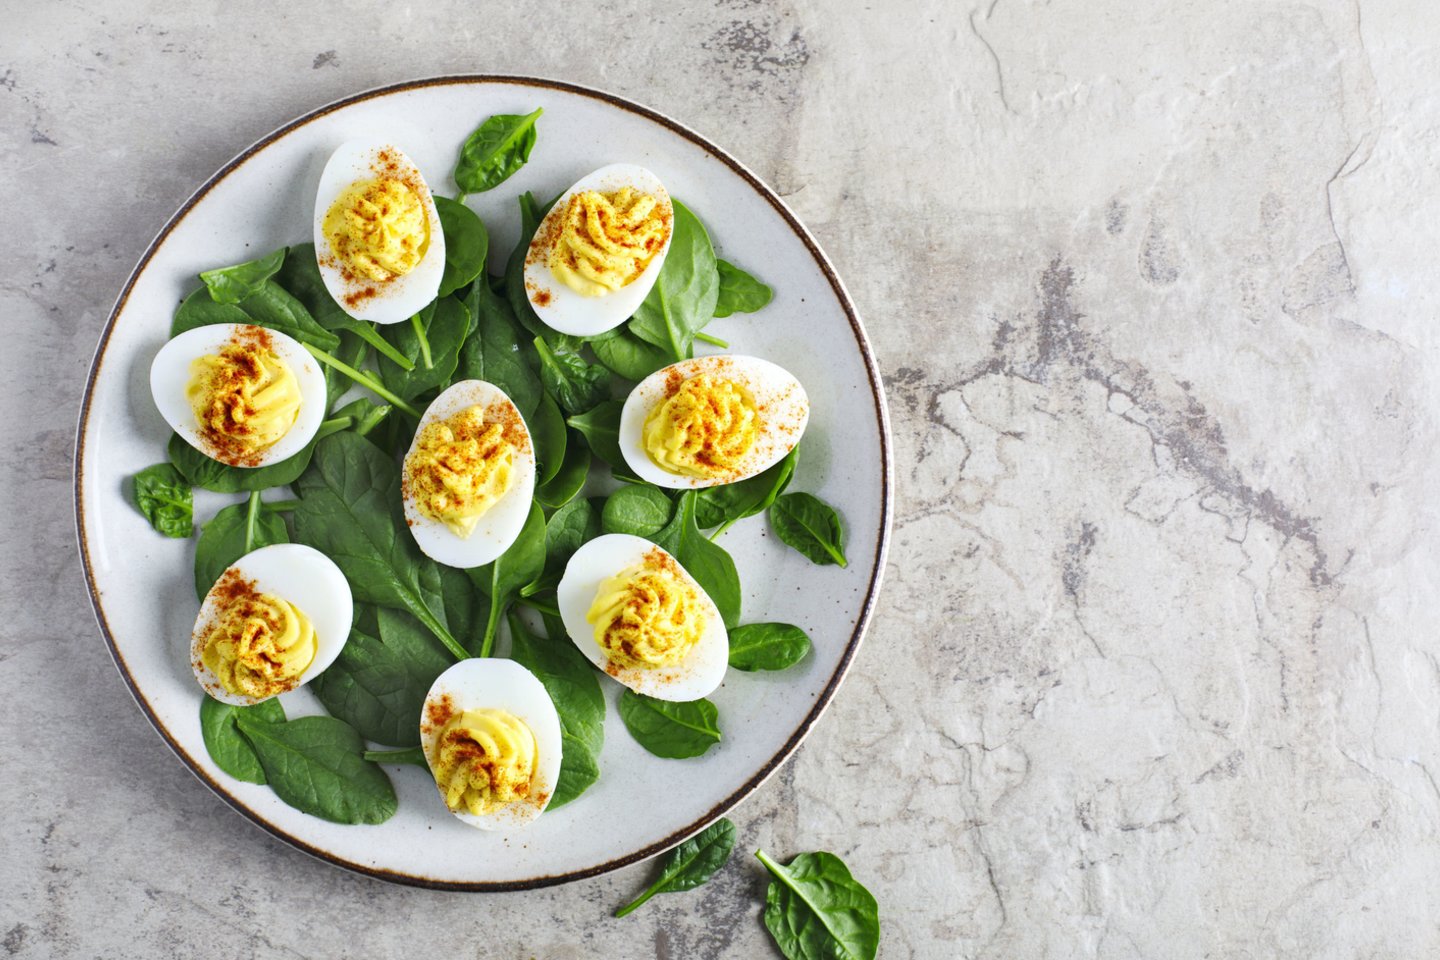 Kiaušiniai yra nepaprastai universalus produktas, kurį galima valgyti bet kuriuo dienos metu ir paruošti iš jų įvairiausius patiekalus.